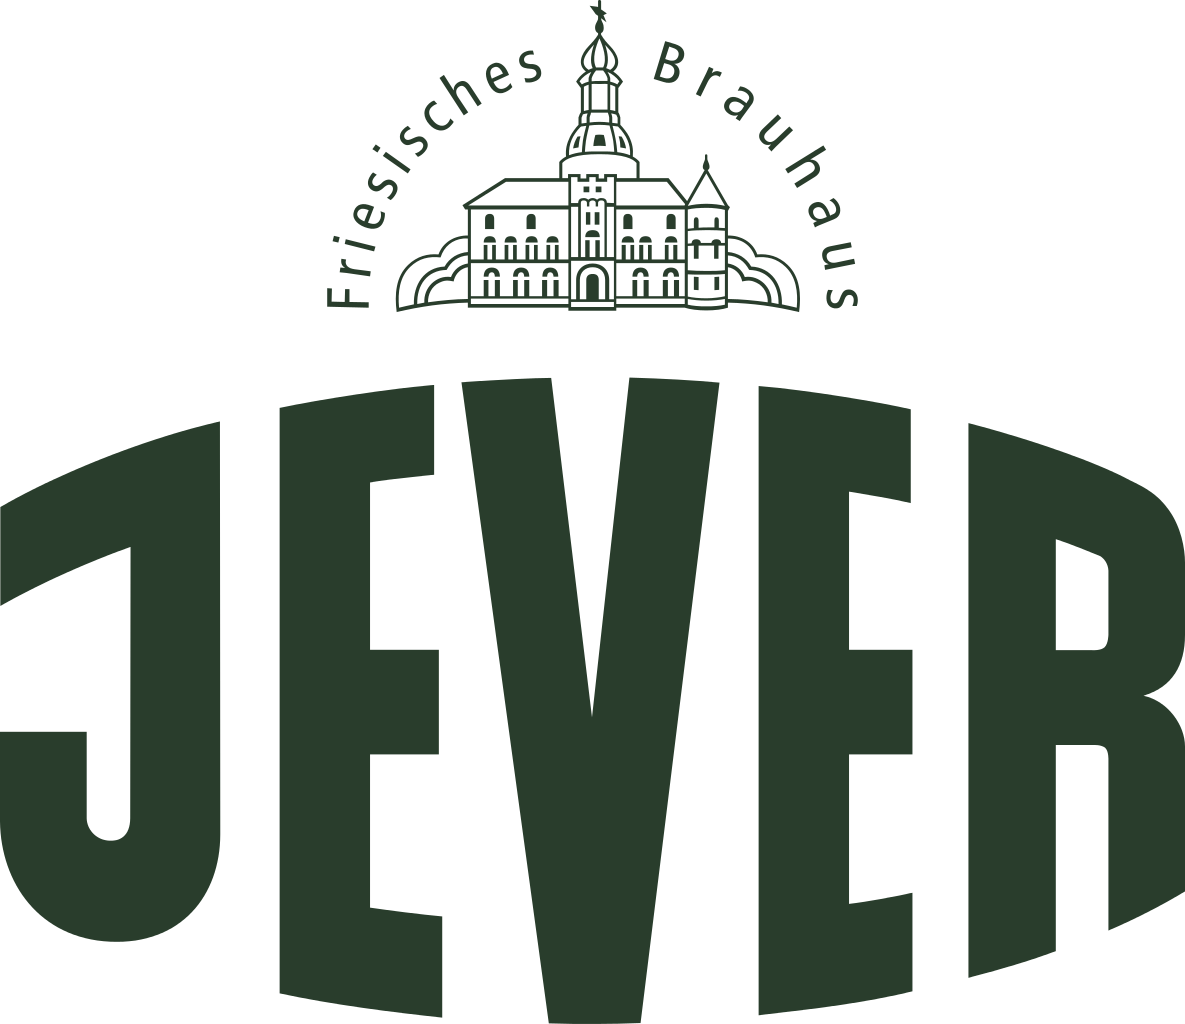 Jever_(Bier)_logo.svg.png